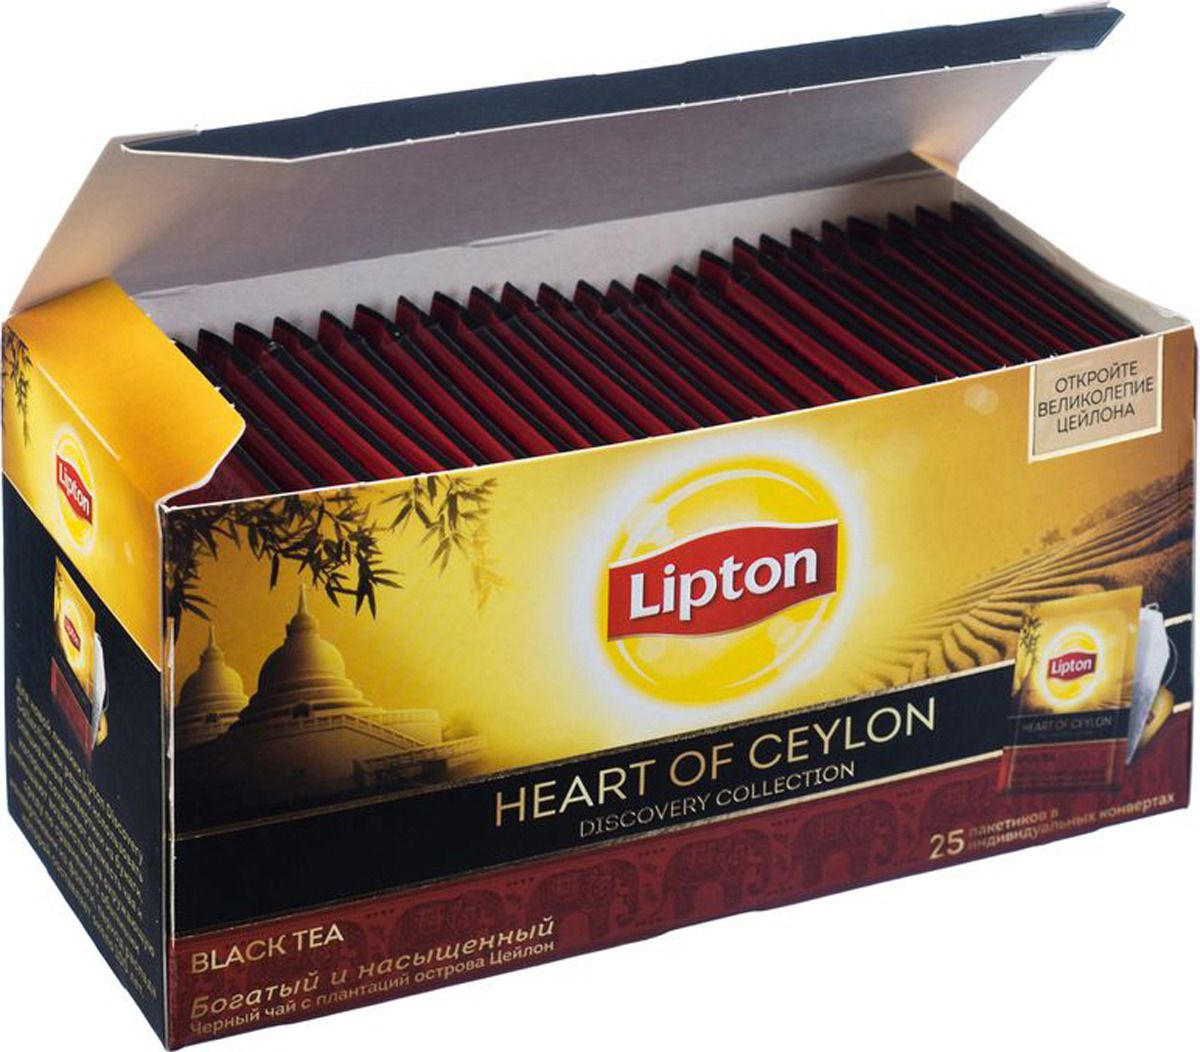 Lipton   Heart of ceylon 25 